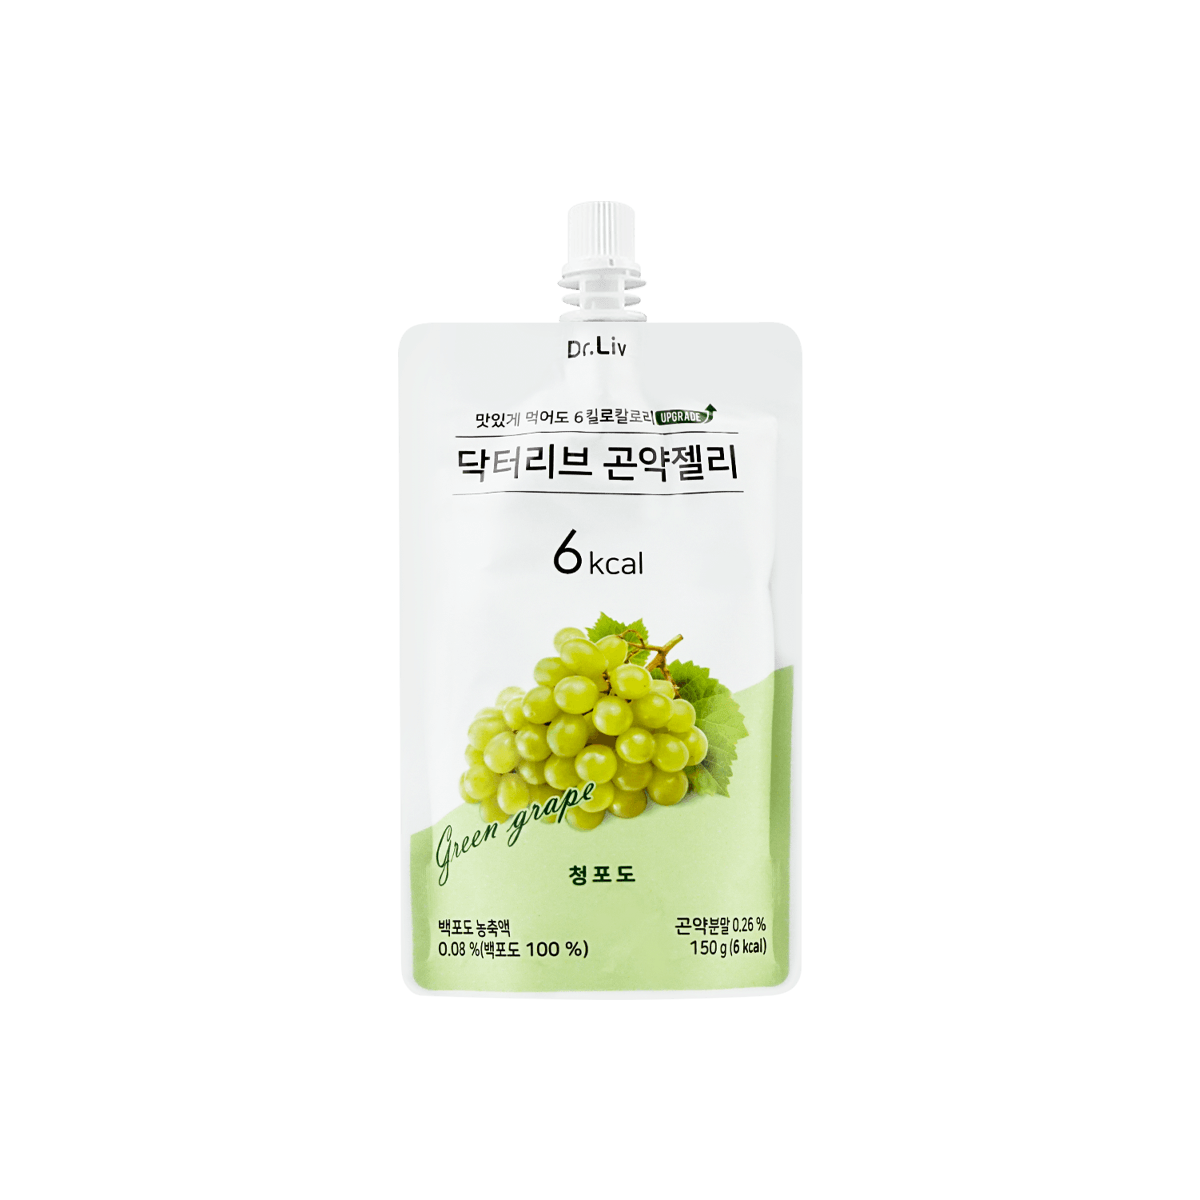 韩国DR.LIV 低糖低卡蒟蒻果冻 绿葡萄味 150g 怎么样 - 亚米网